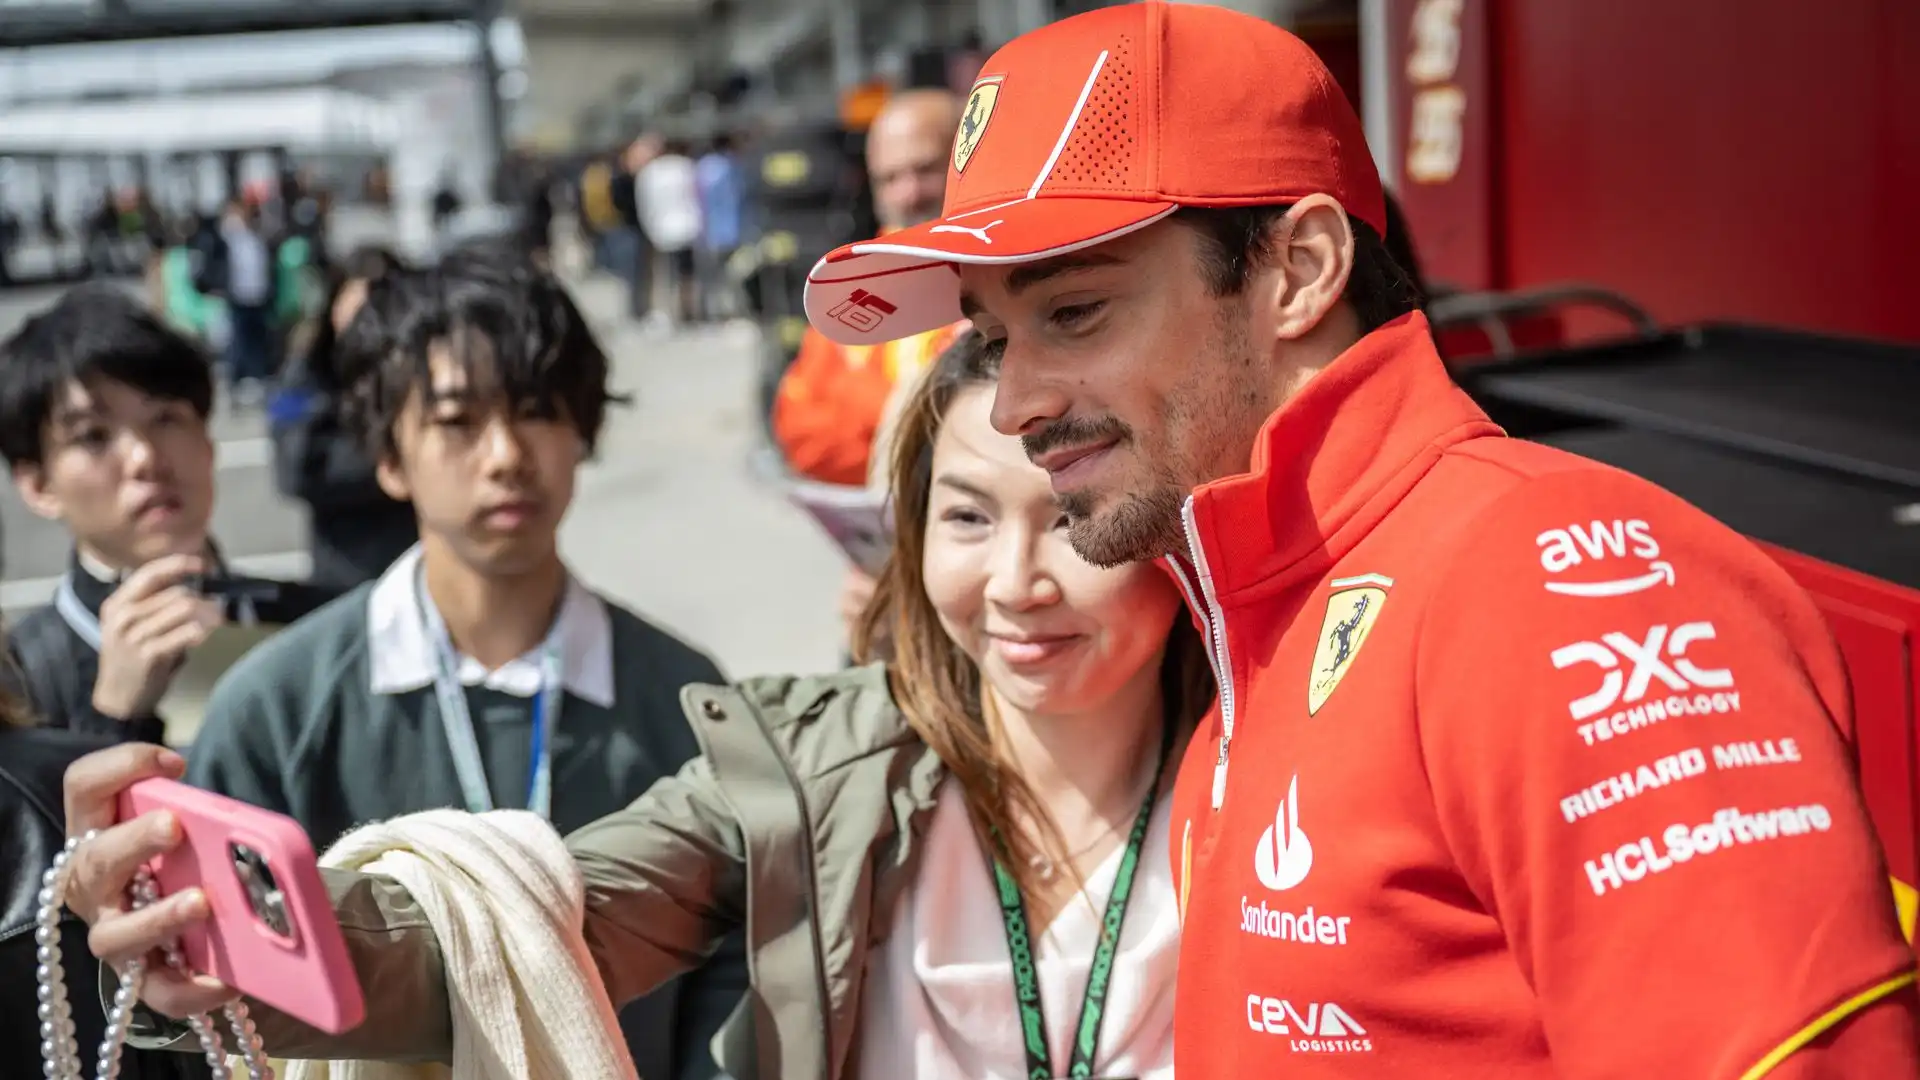 Grande accoglienza per i campioni della F1 a Suzuka